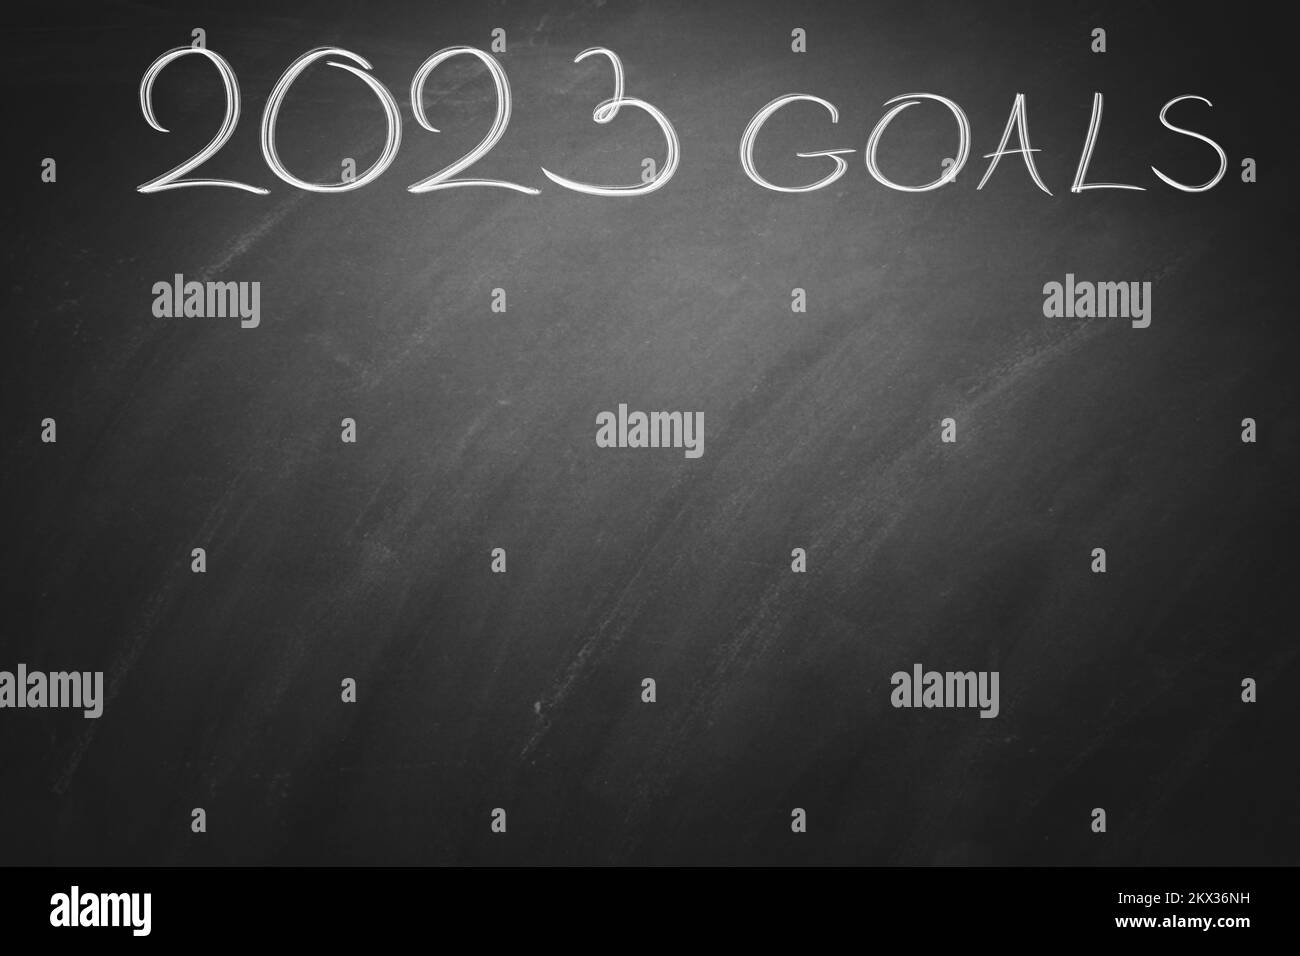 2023 Goals on black board. Chalkboard. Stock Photo